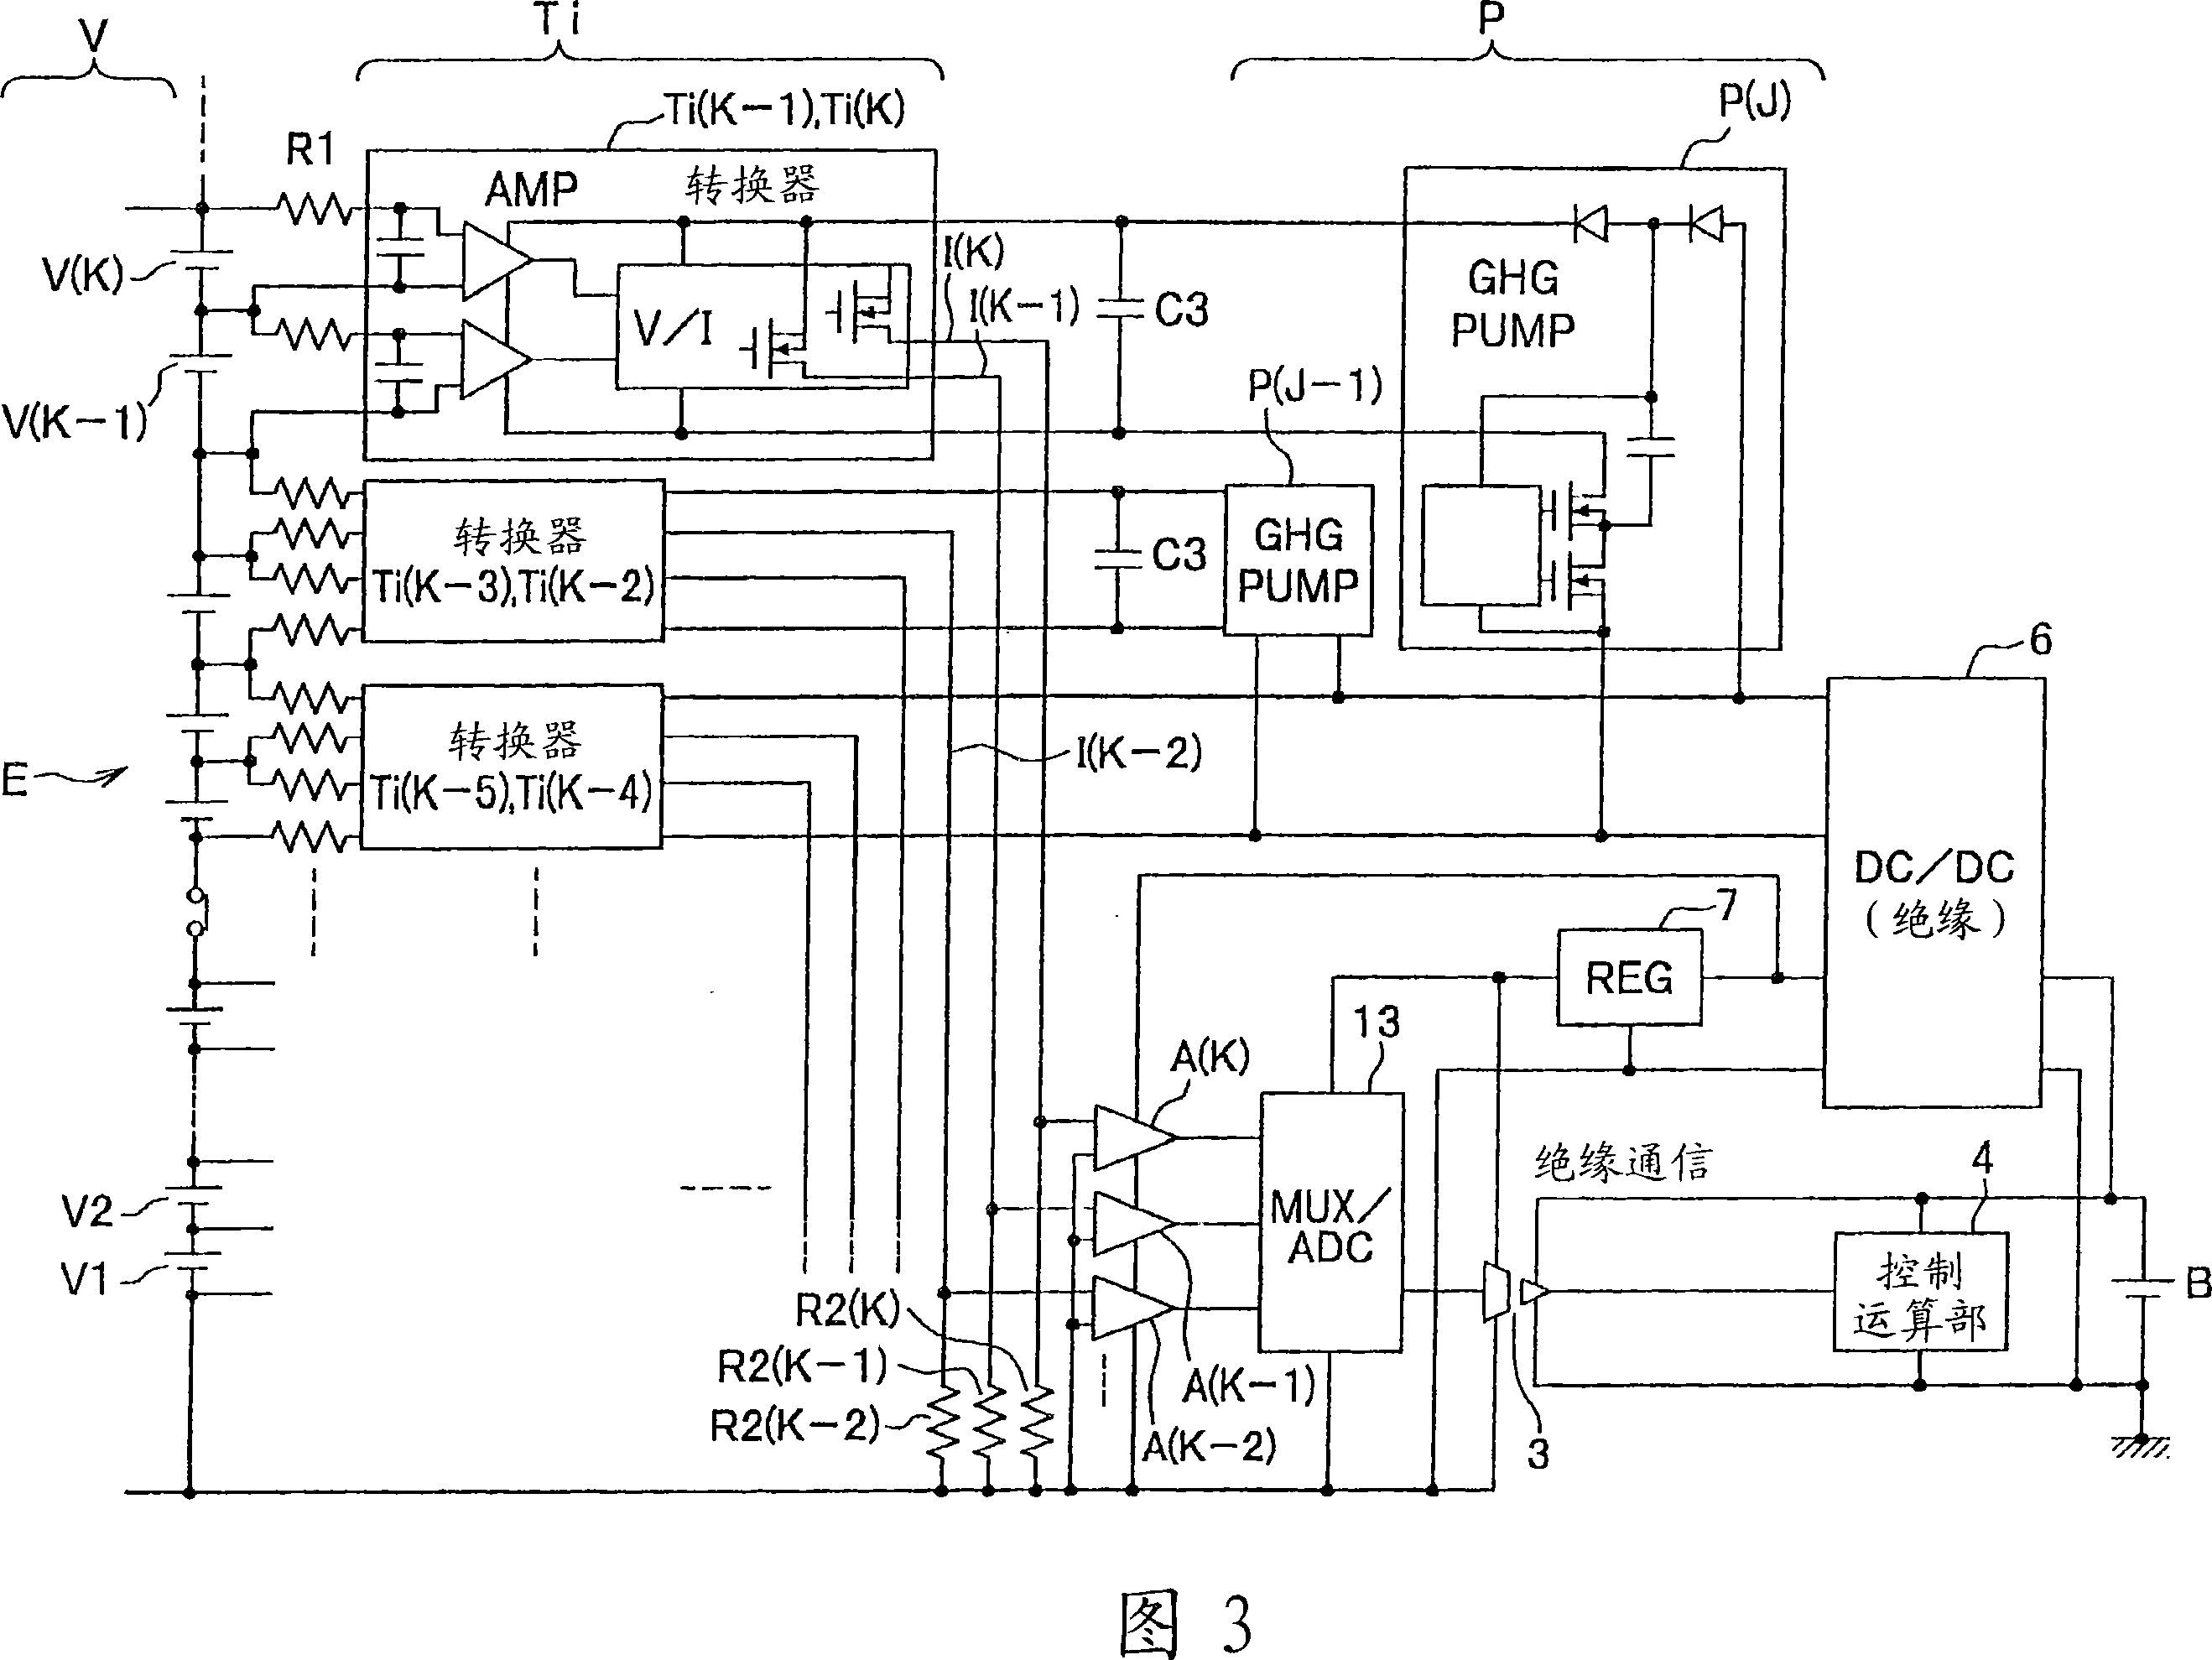 Battery voltage measurement circuit, battery voltage measurement method, and battery electric control unit